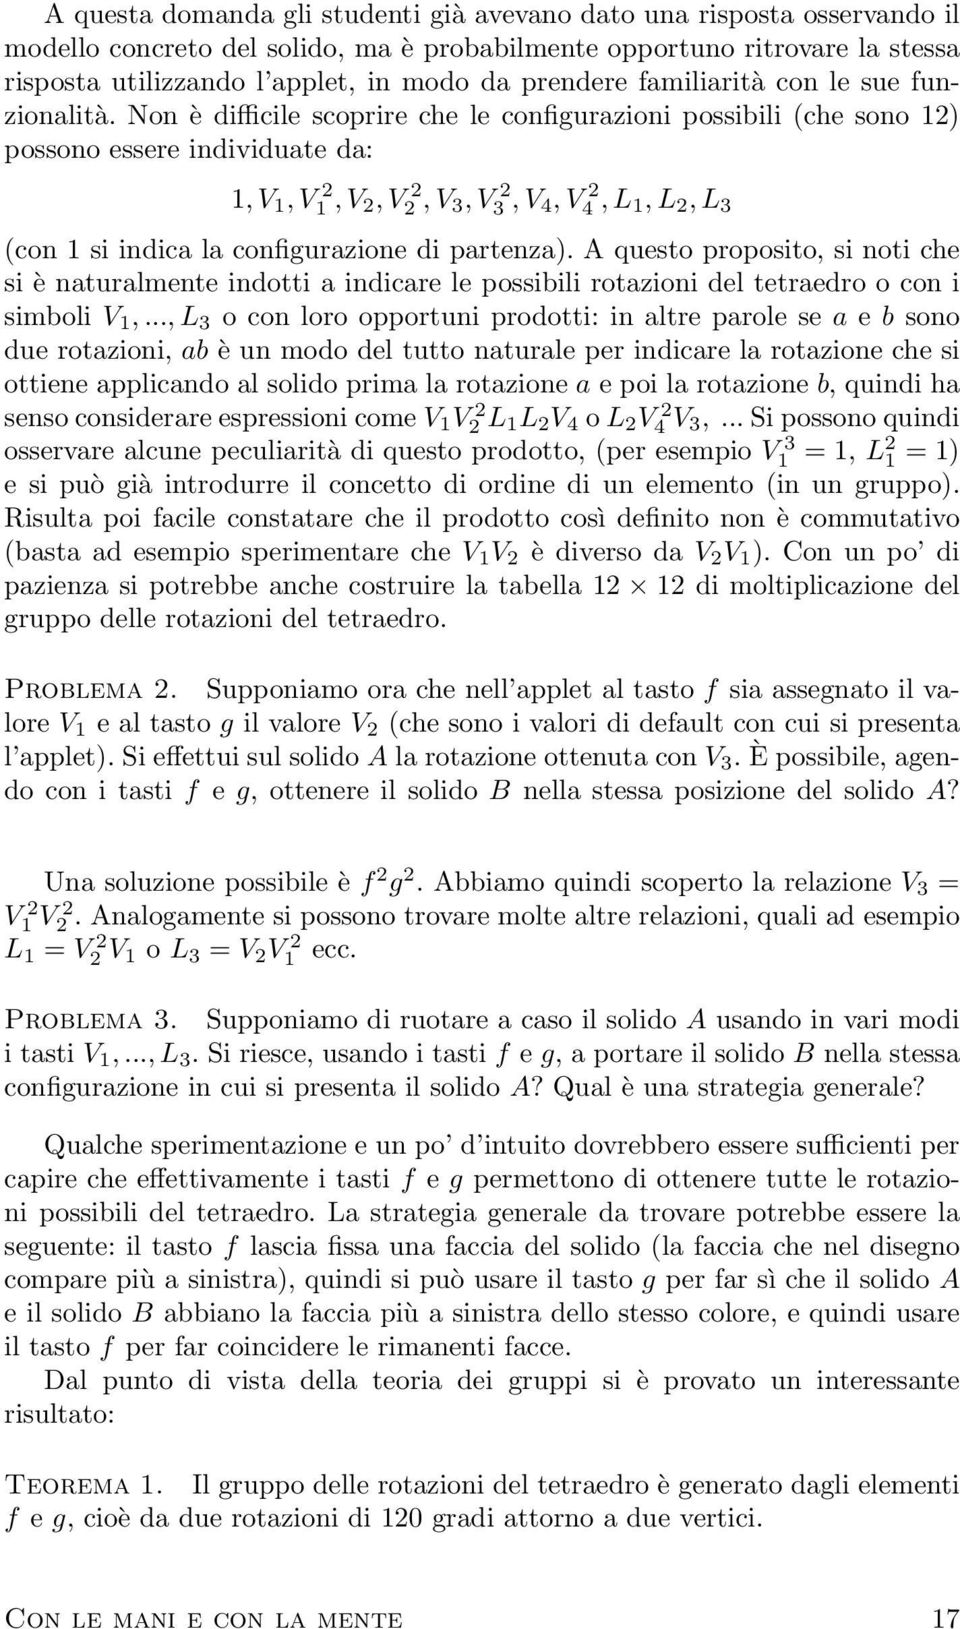 Libro Analisi Matematica 2 Pdf Paolo Marcellini Pdf Scaricare Gratuito Formato Pdb